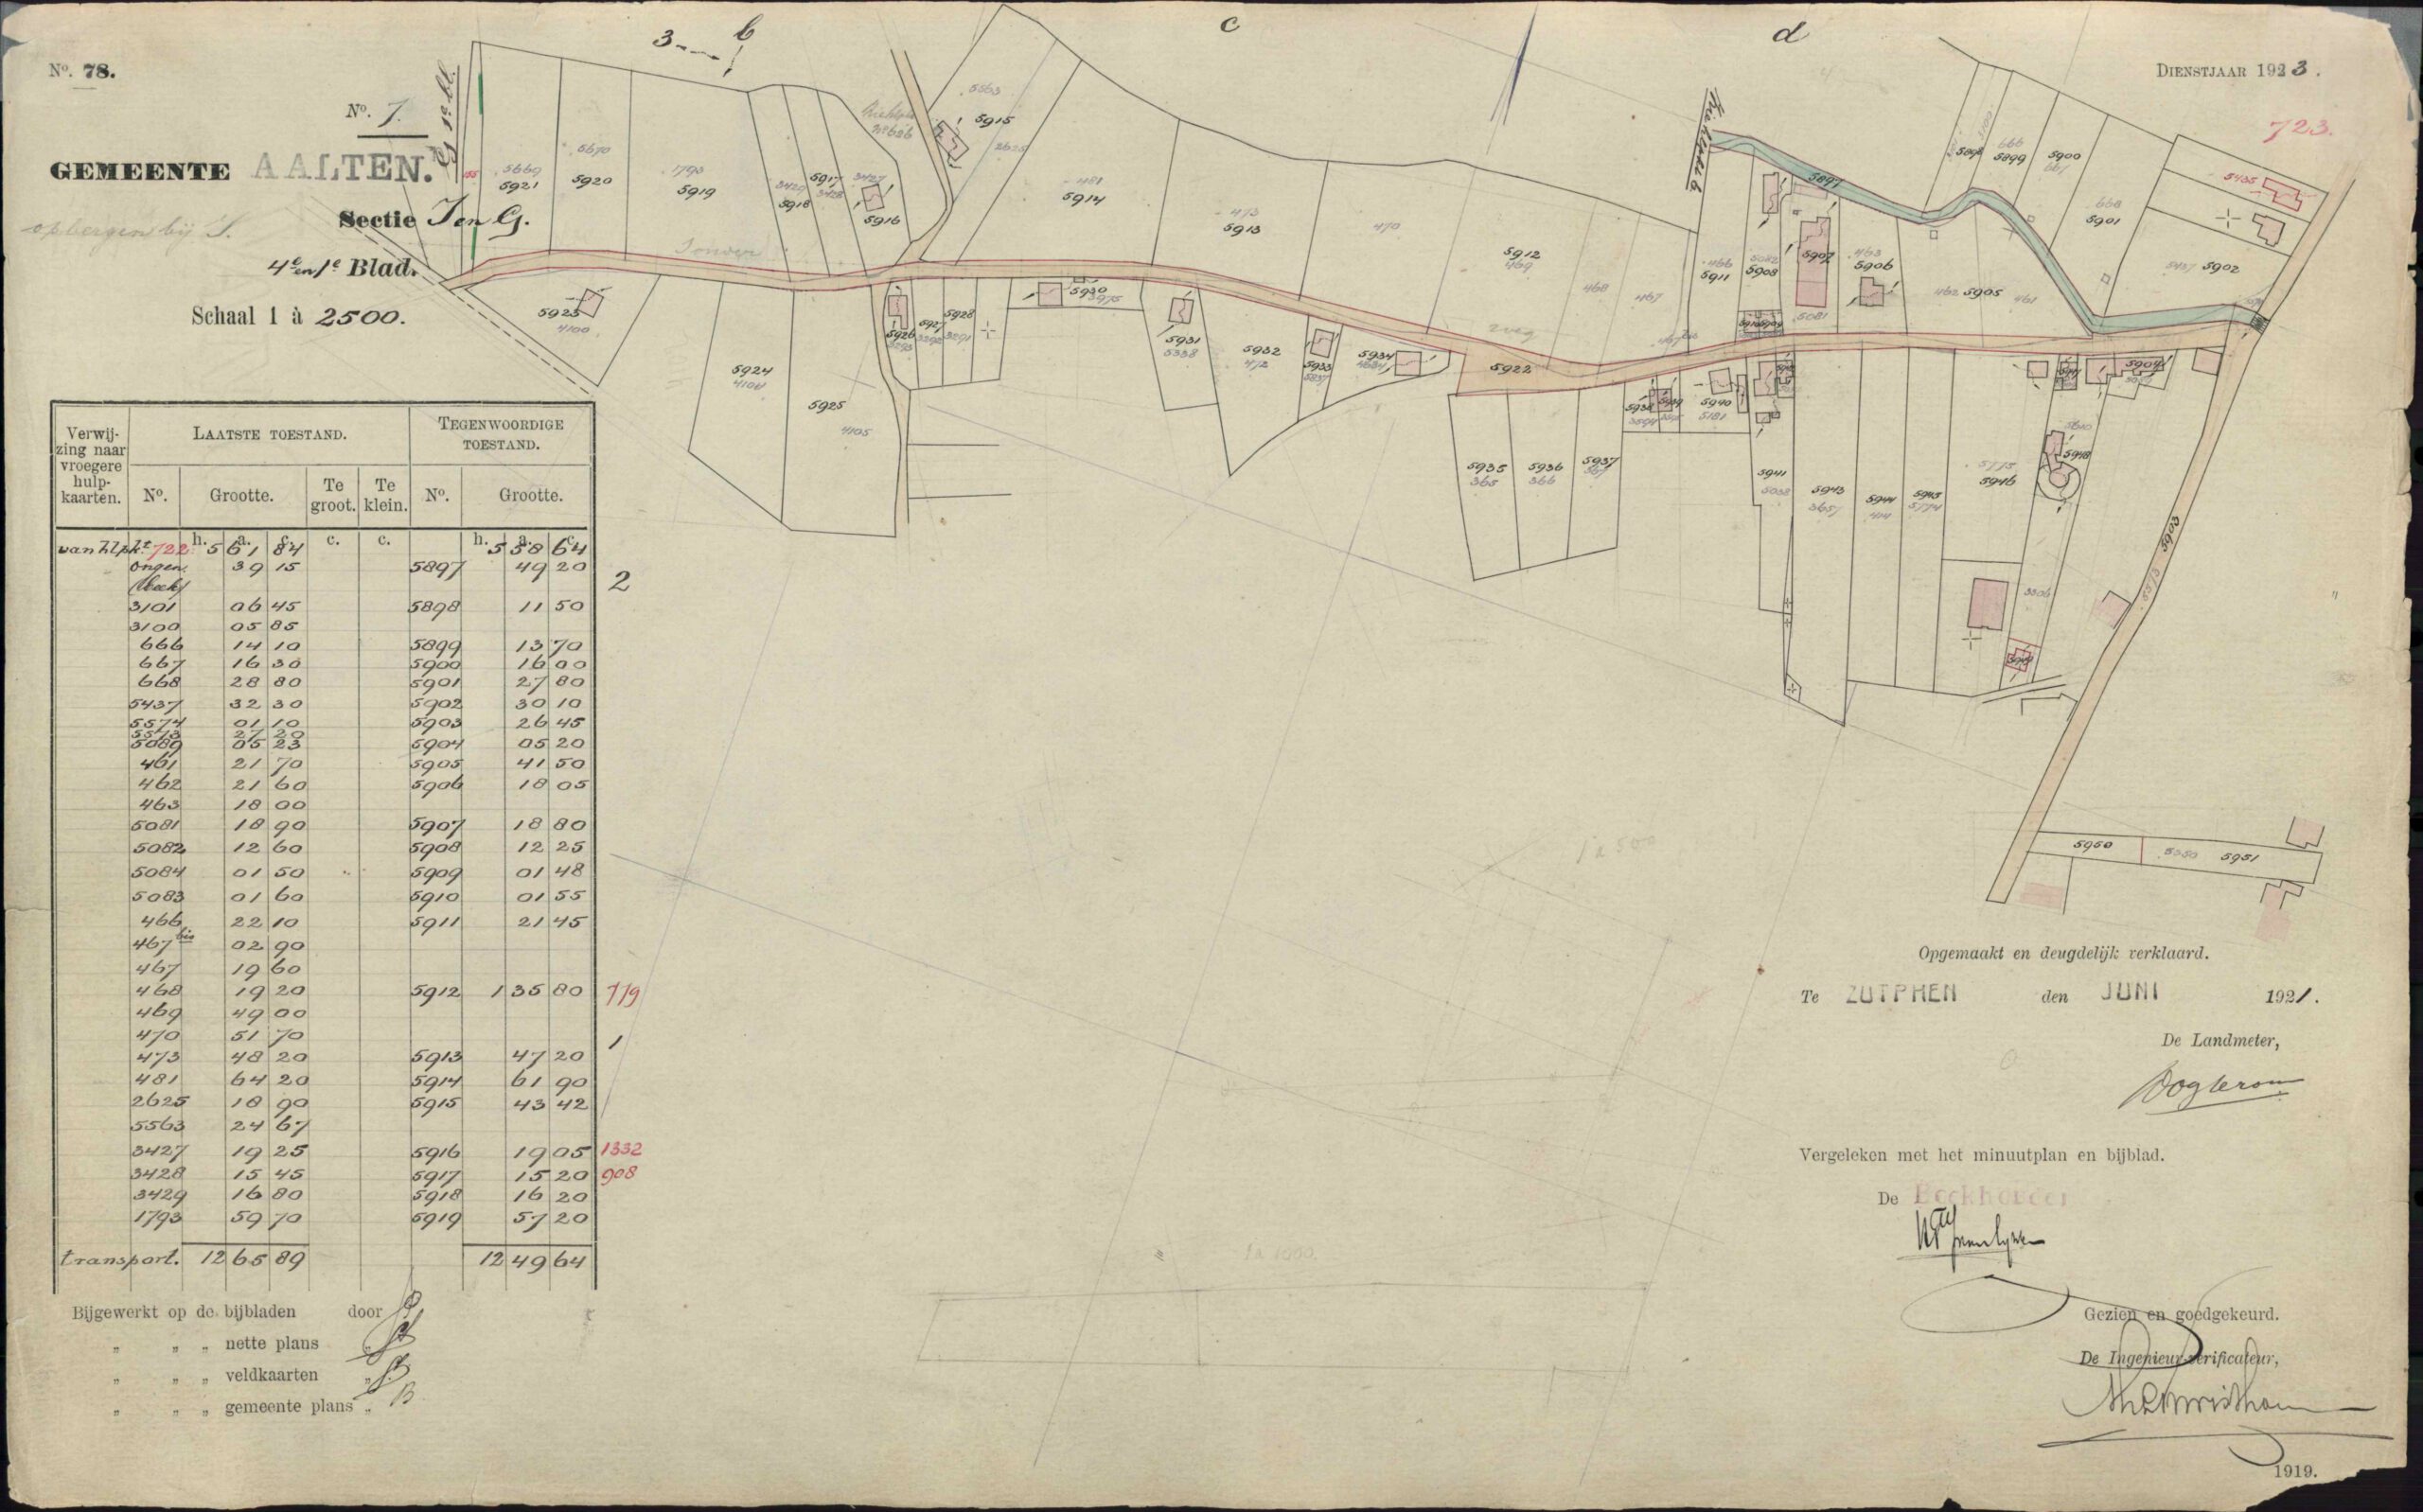 Adm. de Ruyterstraat, Aalten - Kadastrale kaart 1921 - Hulpkaart_ATN02_I_723_1